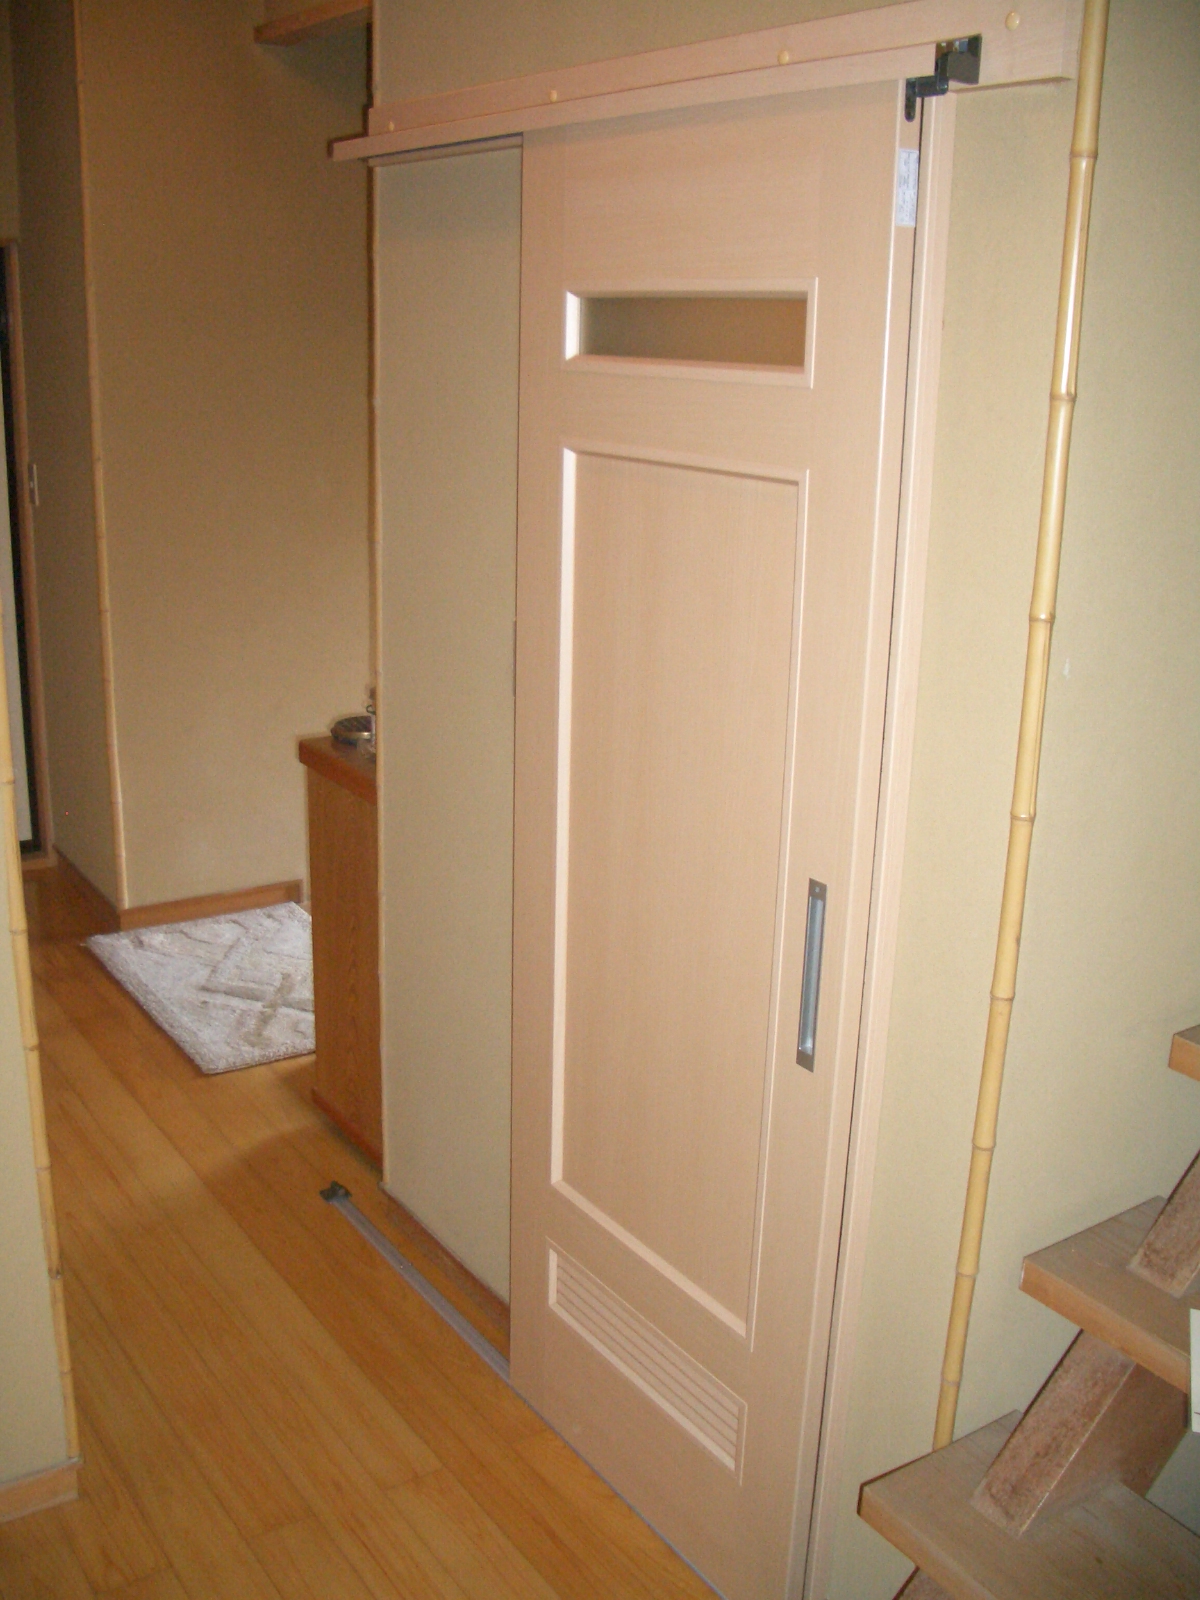 022 トイレドアの変更 ｱｳﾄｾｯﾄ引戸 自立支援住宅改修工事 プランニング 施工 住まいる悠